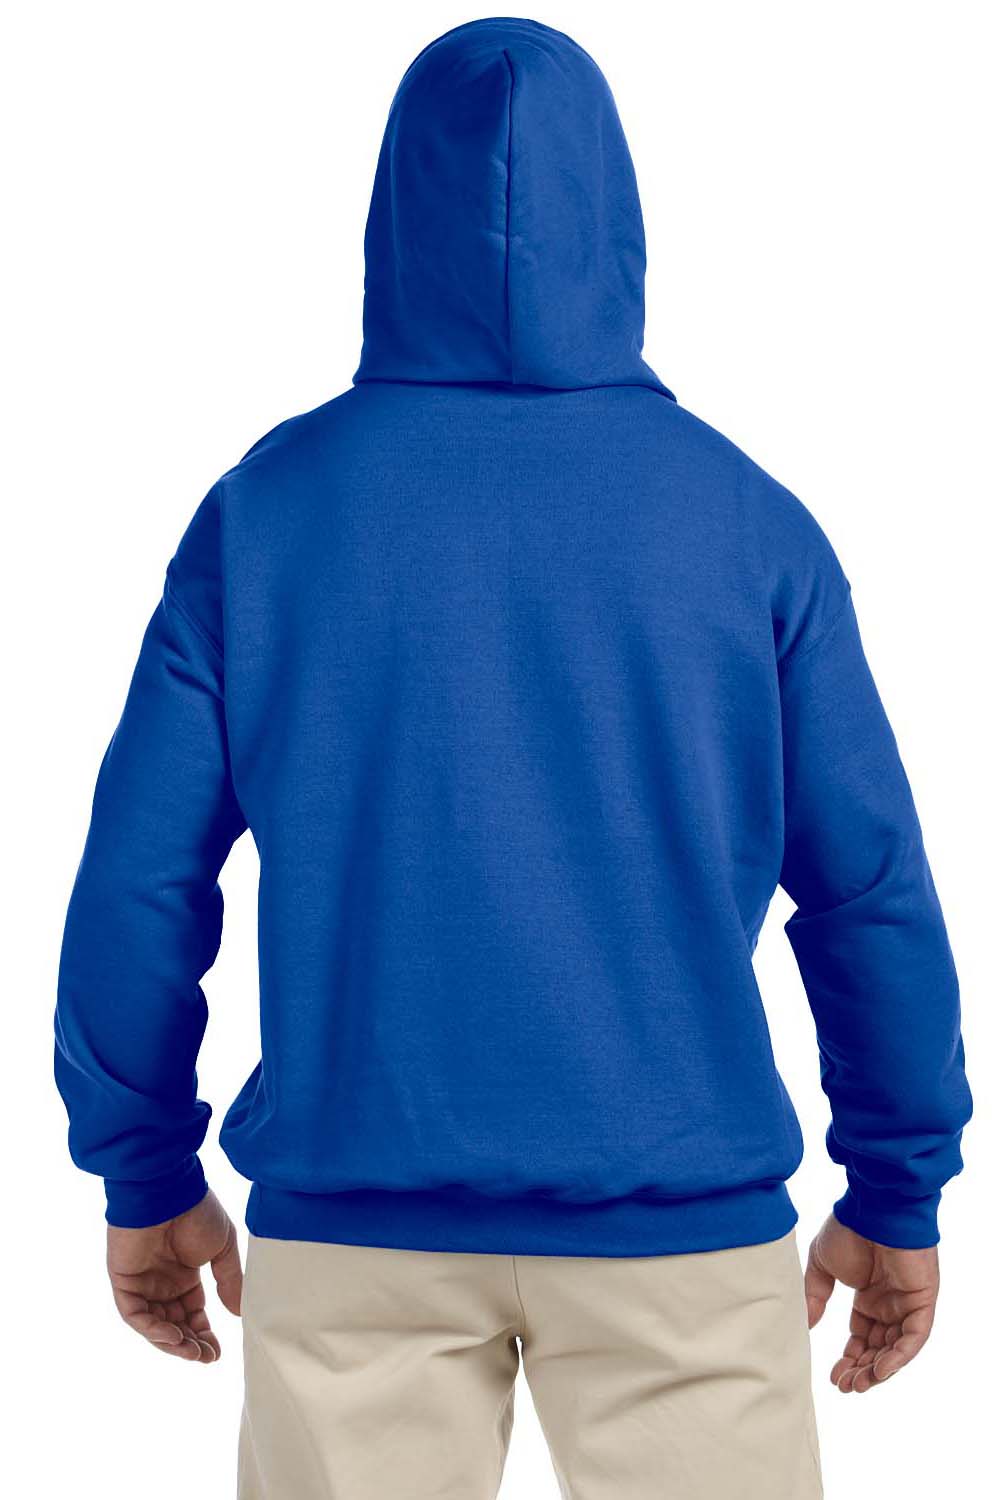 Gildan G125 Mens DryBlend Moisture Wicking Hooded Sweatshirt Hoodie Royal Blue Back